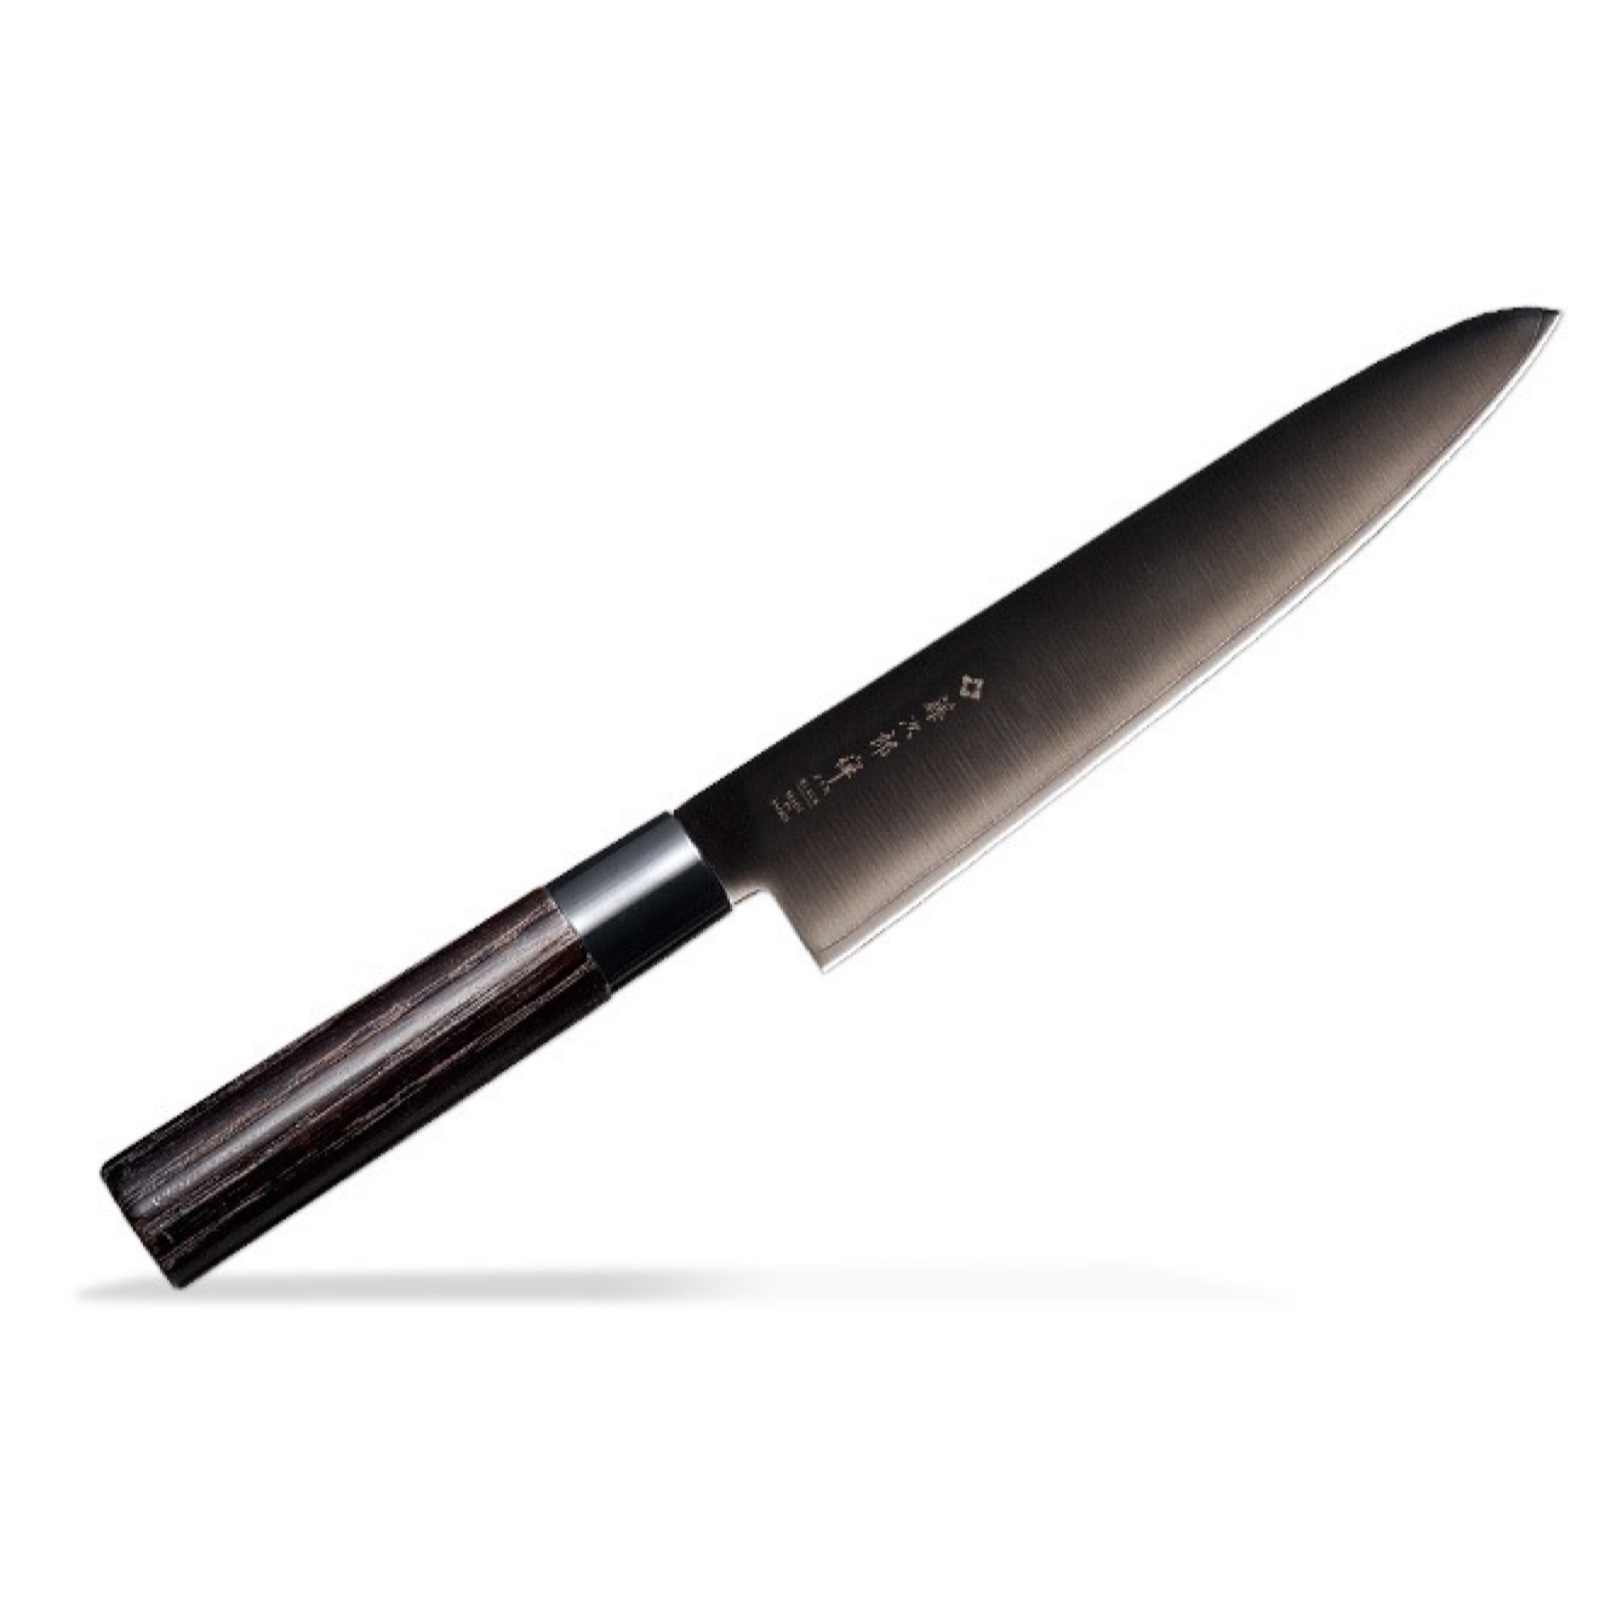 סכין שף רב-תכליתית גיוטו 210מ״מ פלדת VG-10 גימור מושחר ידית עץ ערמון מסורתית טוג׳ירו יפן [SKTOJIFD-15641124]